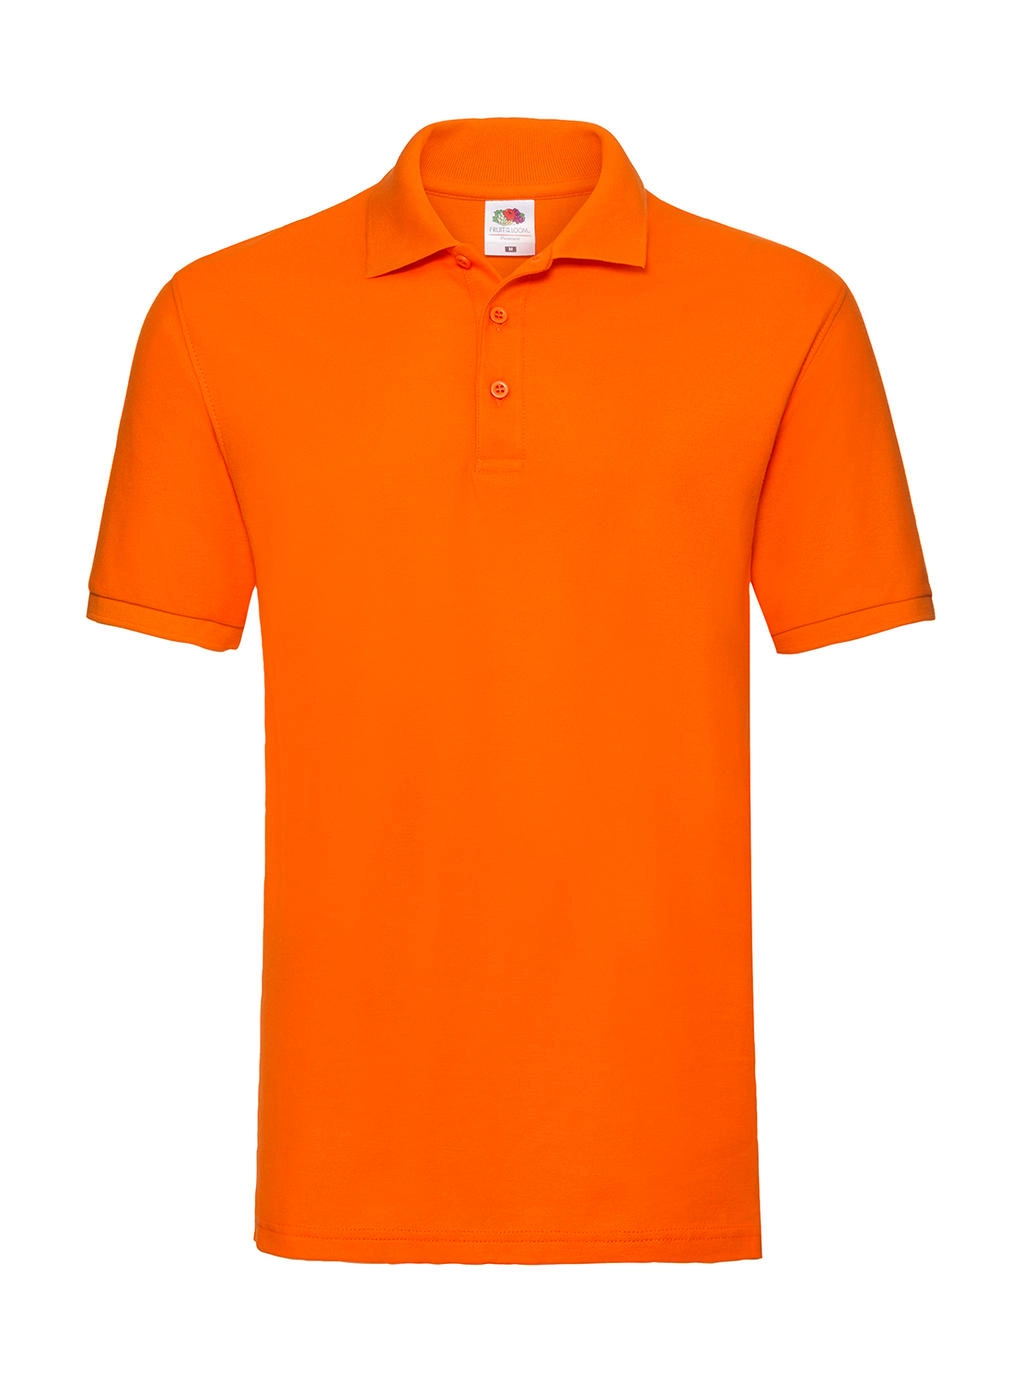 Premium Polo zum Besticken und Bedrucken in der Farbe Orange mit Ihren Logo, Schriftzug oder Motiv.